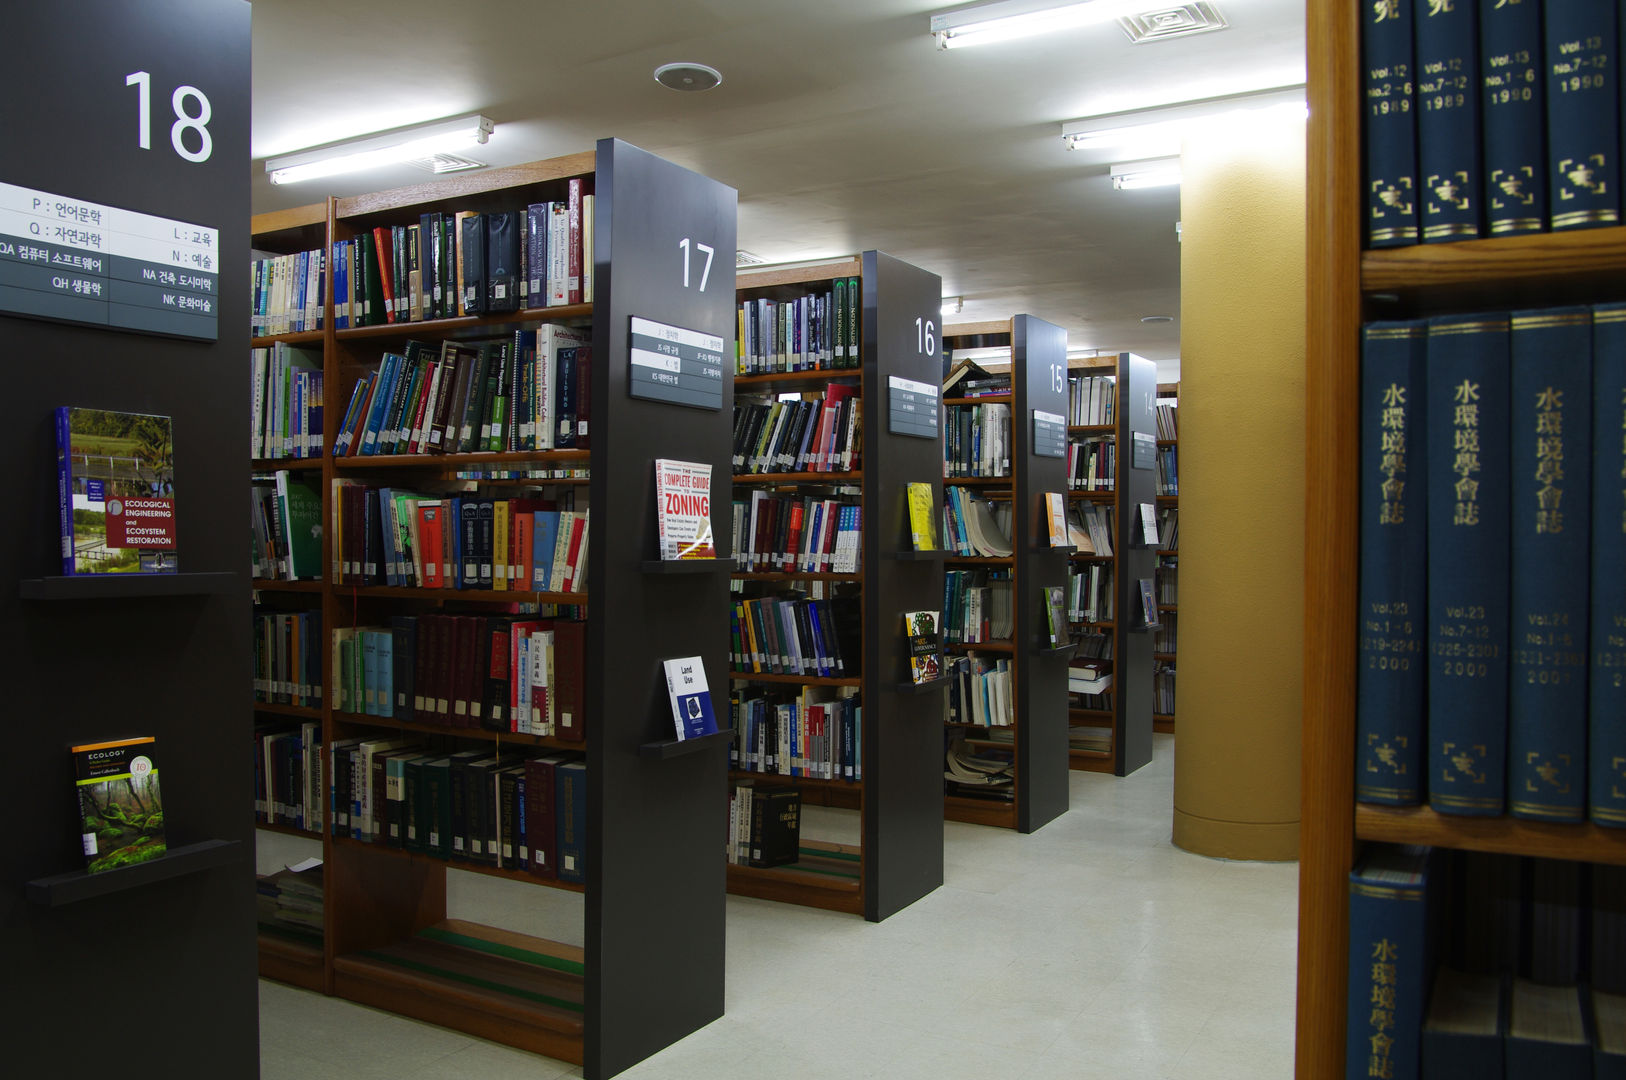 서울연구원 도서관 / The Seoul Institute Library, Korea, Design Solution Design Solution Espaços comerciais Centros de congressos